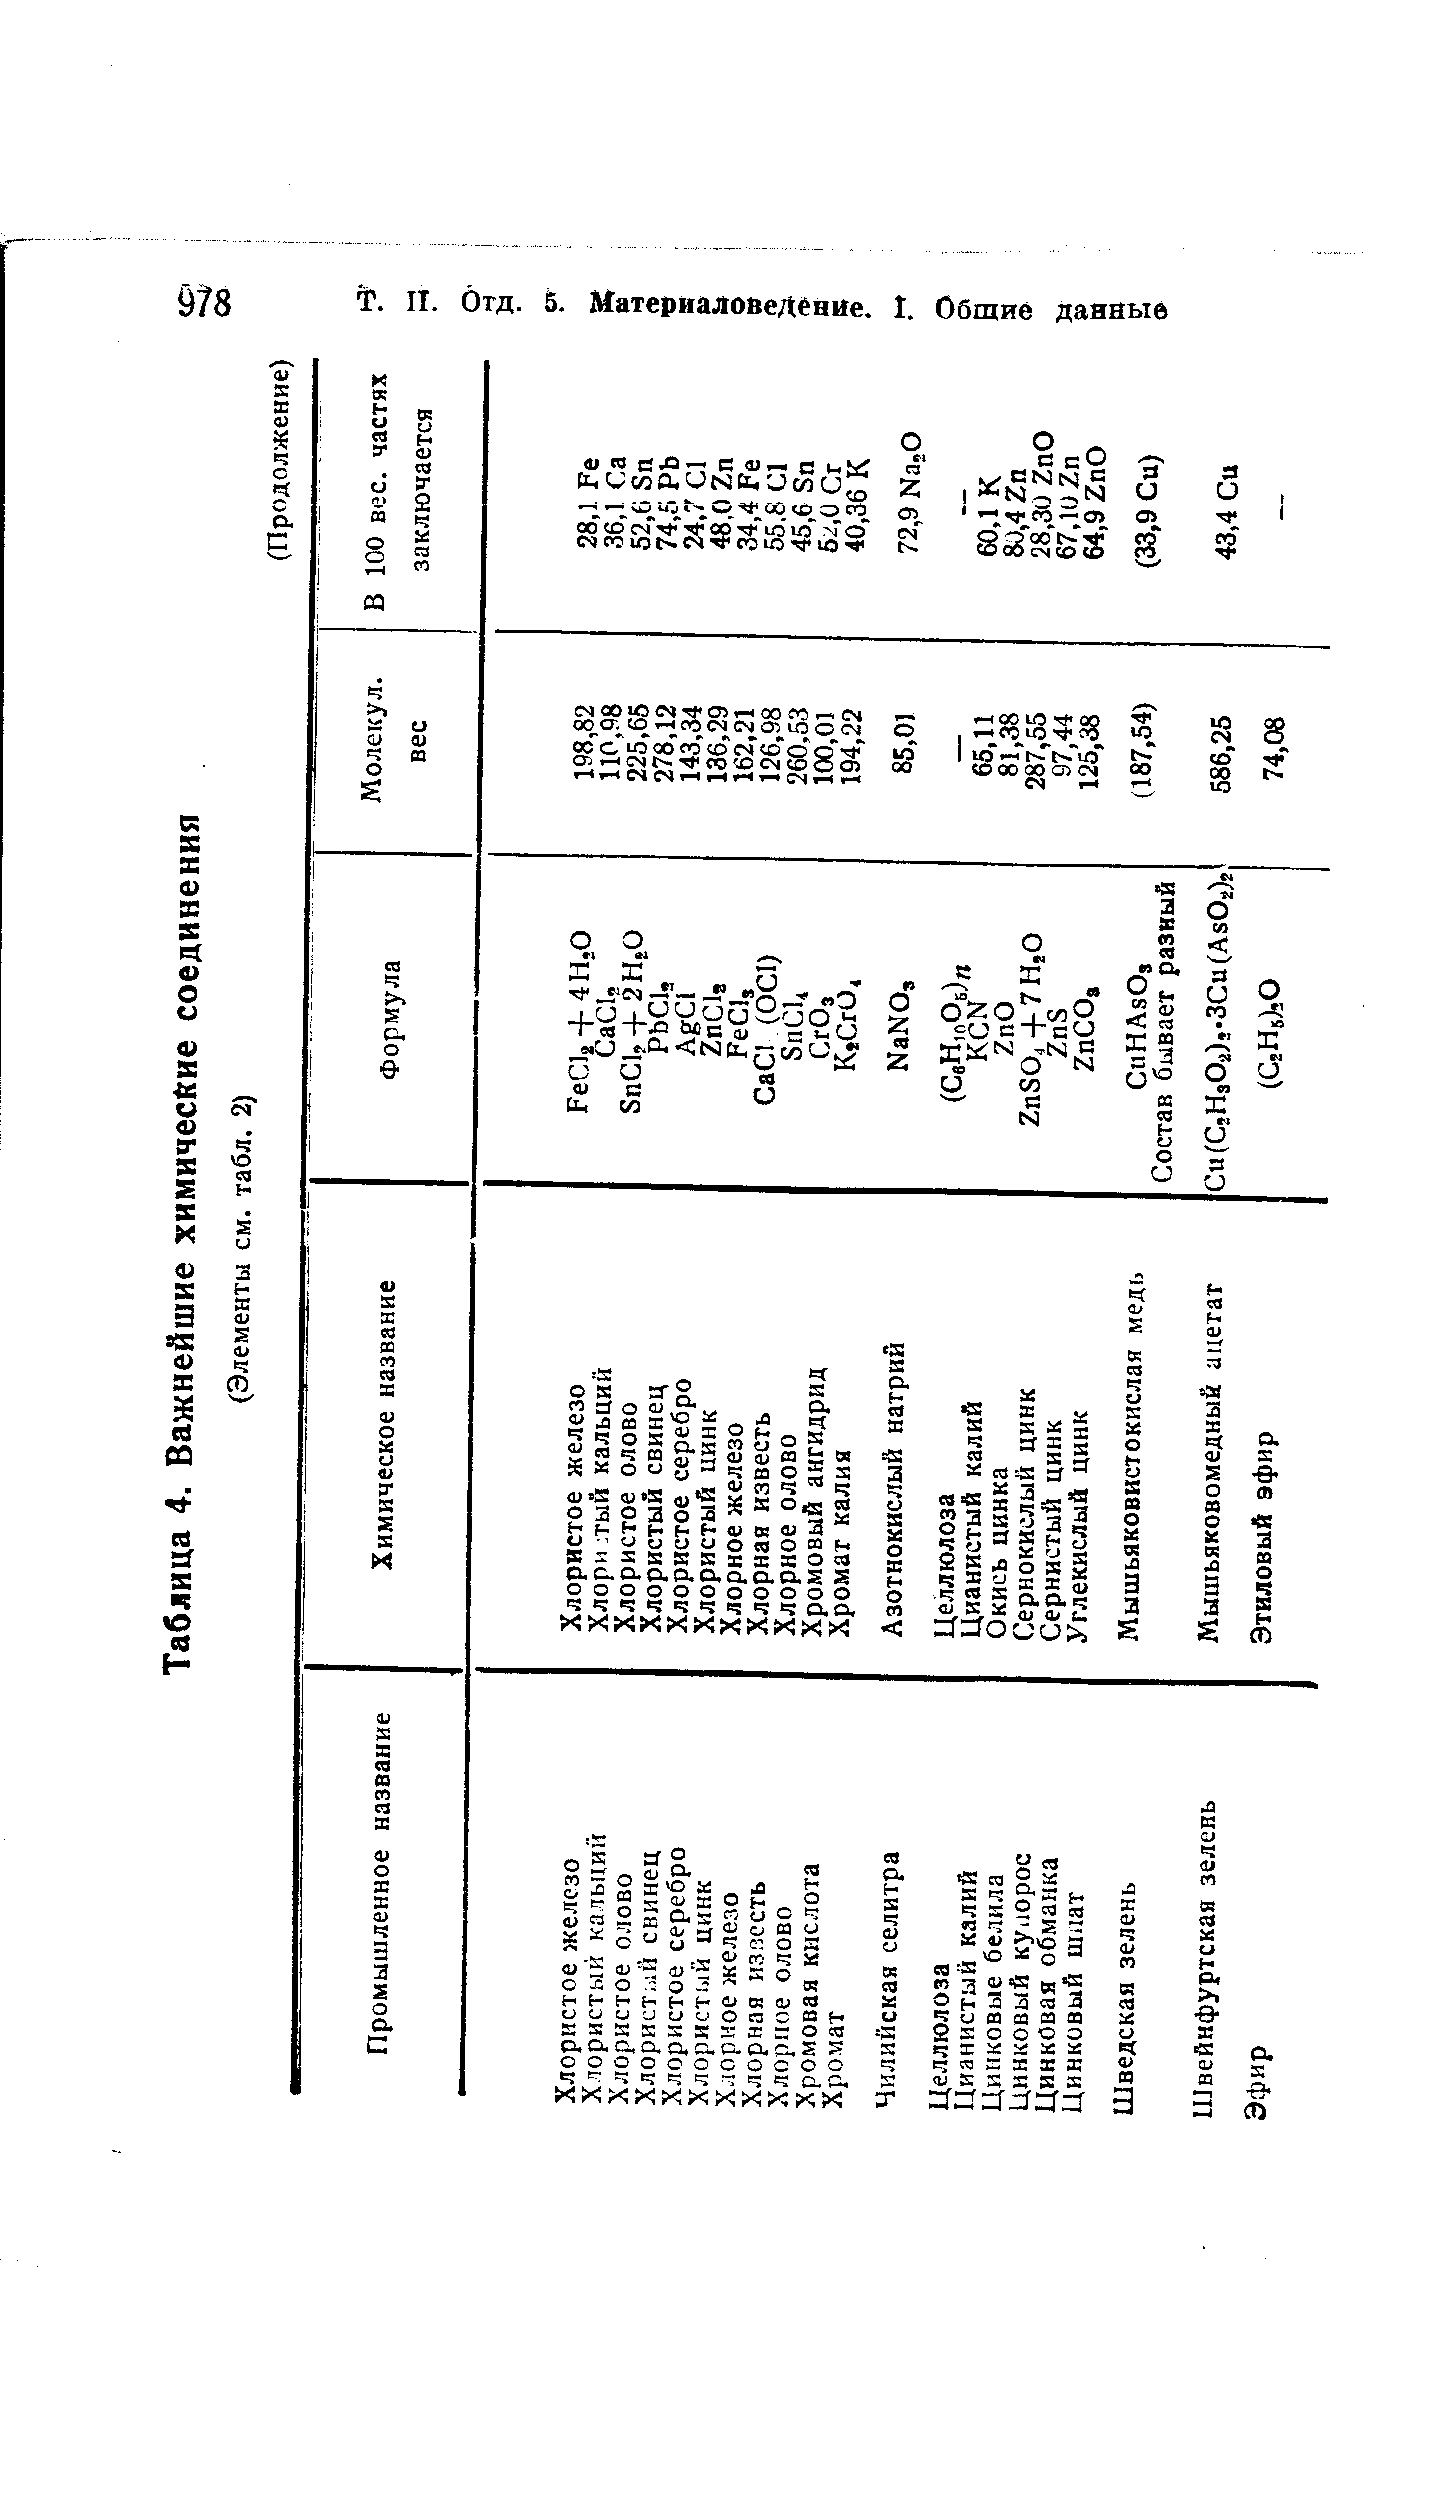 Таблица 4. Важнейшие химические соединения
